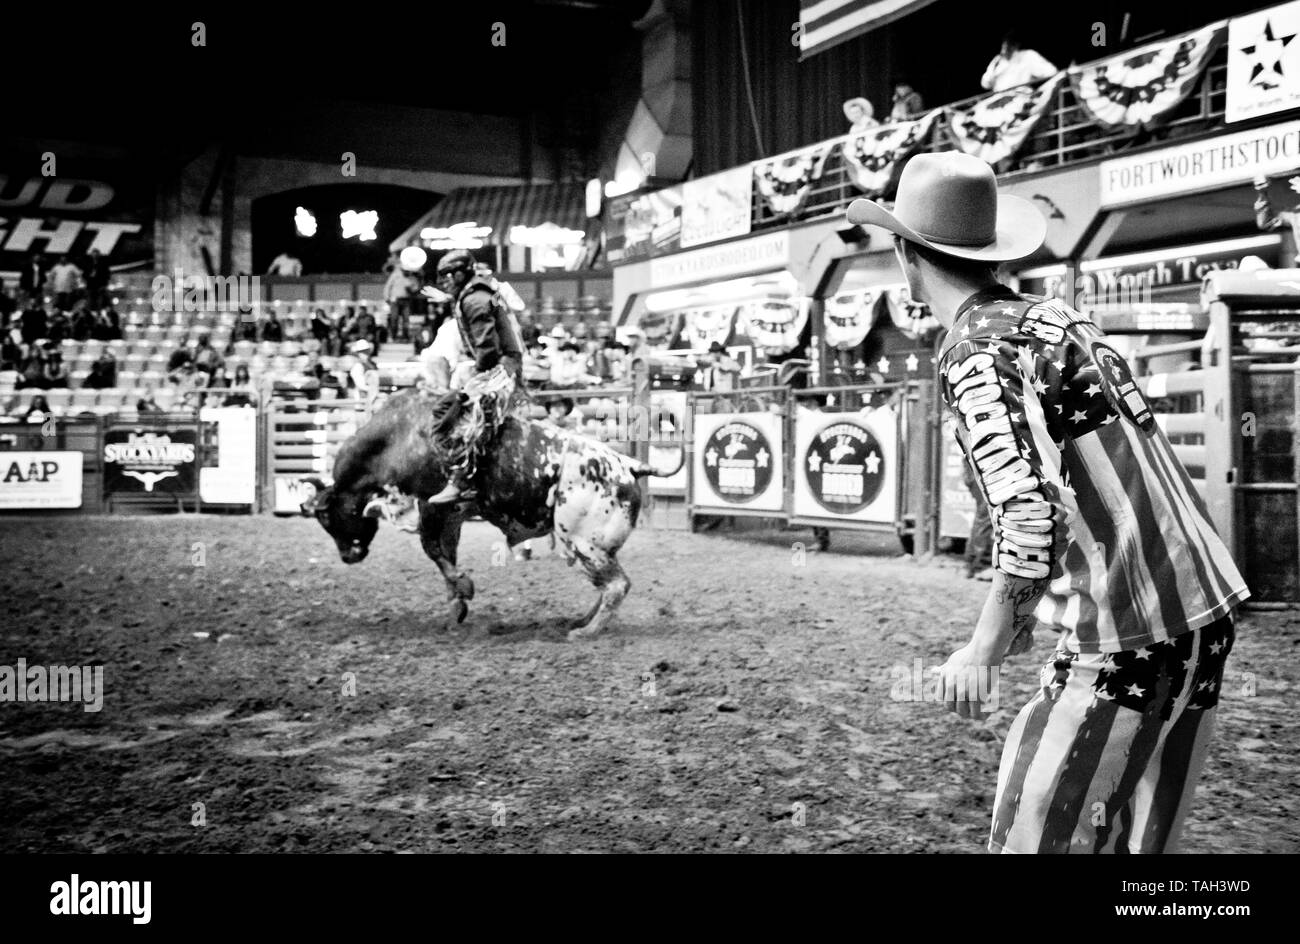 Rodeo clown, prêt à distraire le taureau, événement sportif extrême, cow-boy en action comme il s'efforce de monter le gros taureau, fort Worth, les parcs à bestiaux, Texas, USA, Banque D'Images